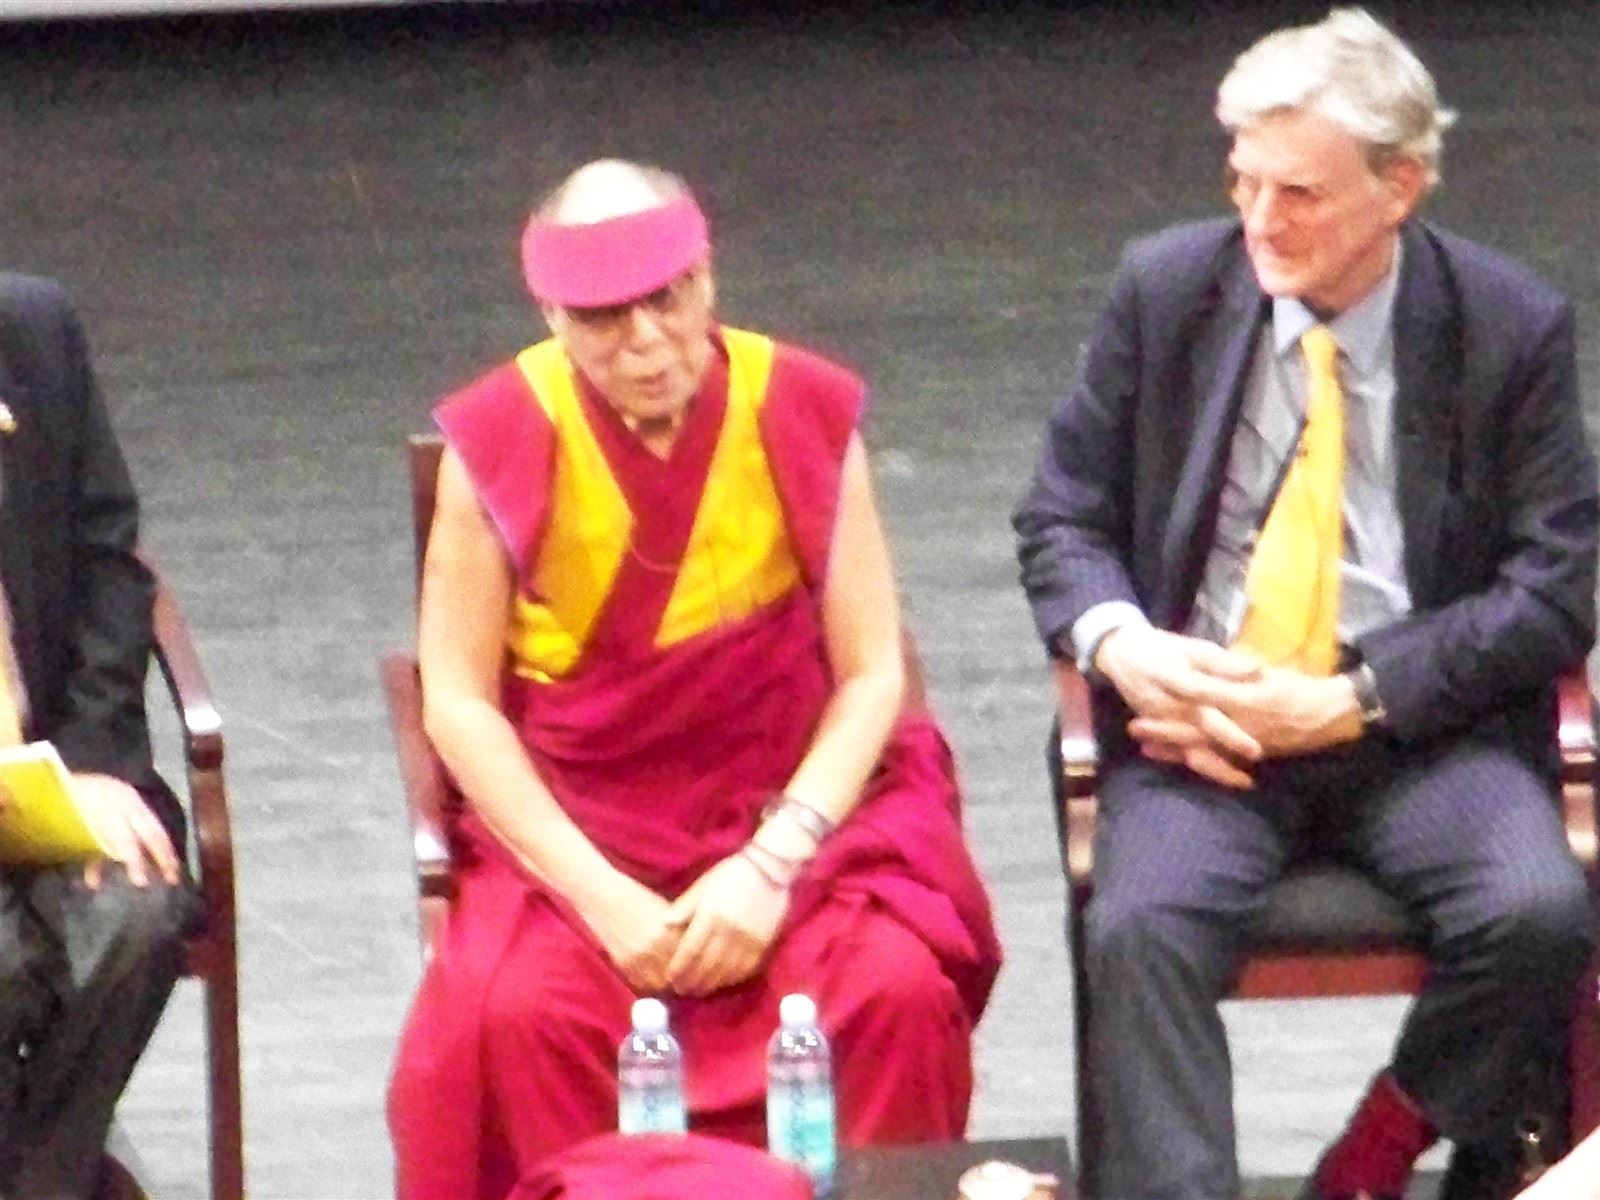 His Holiness the Dalai Lama, Moderator Robert Thurman : His Holiness the Dalai Lama with Moderator Robert Thurman, @NewarkPeace May 2011